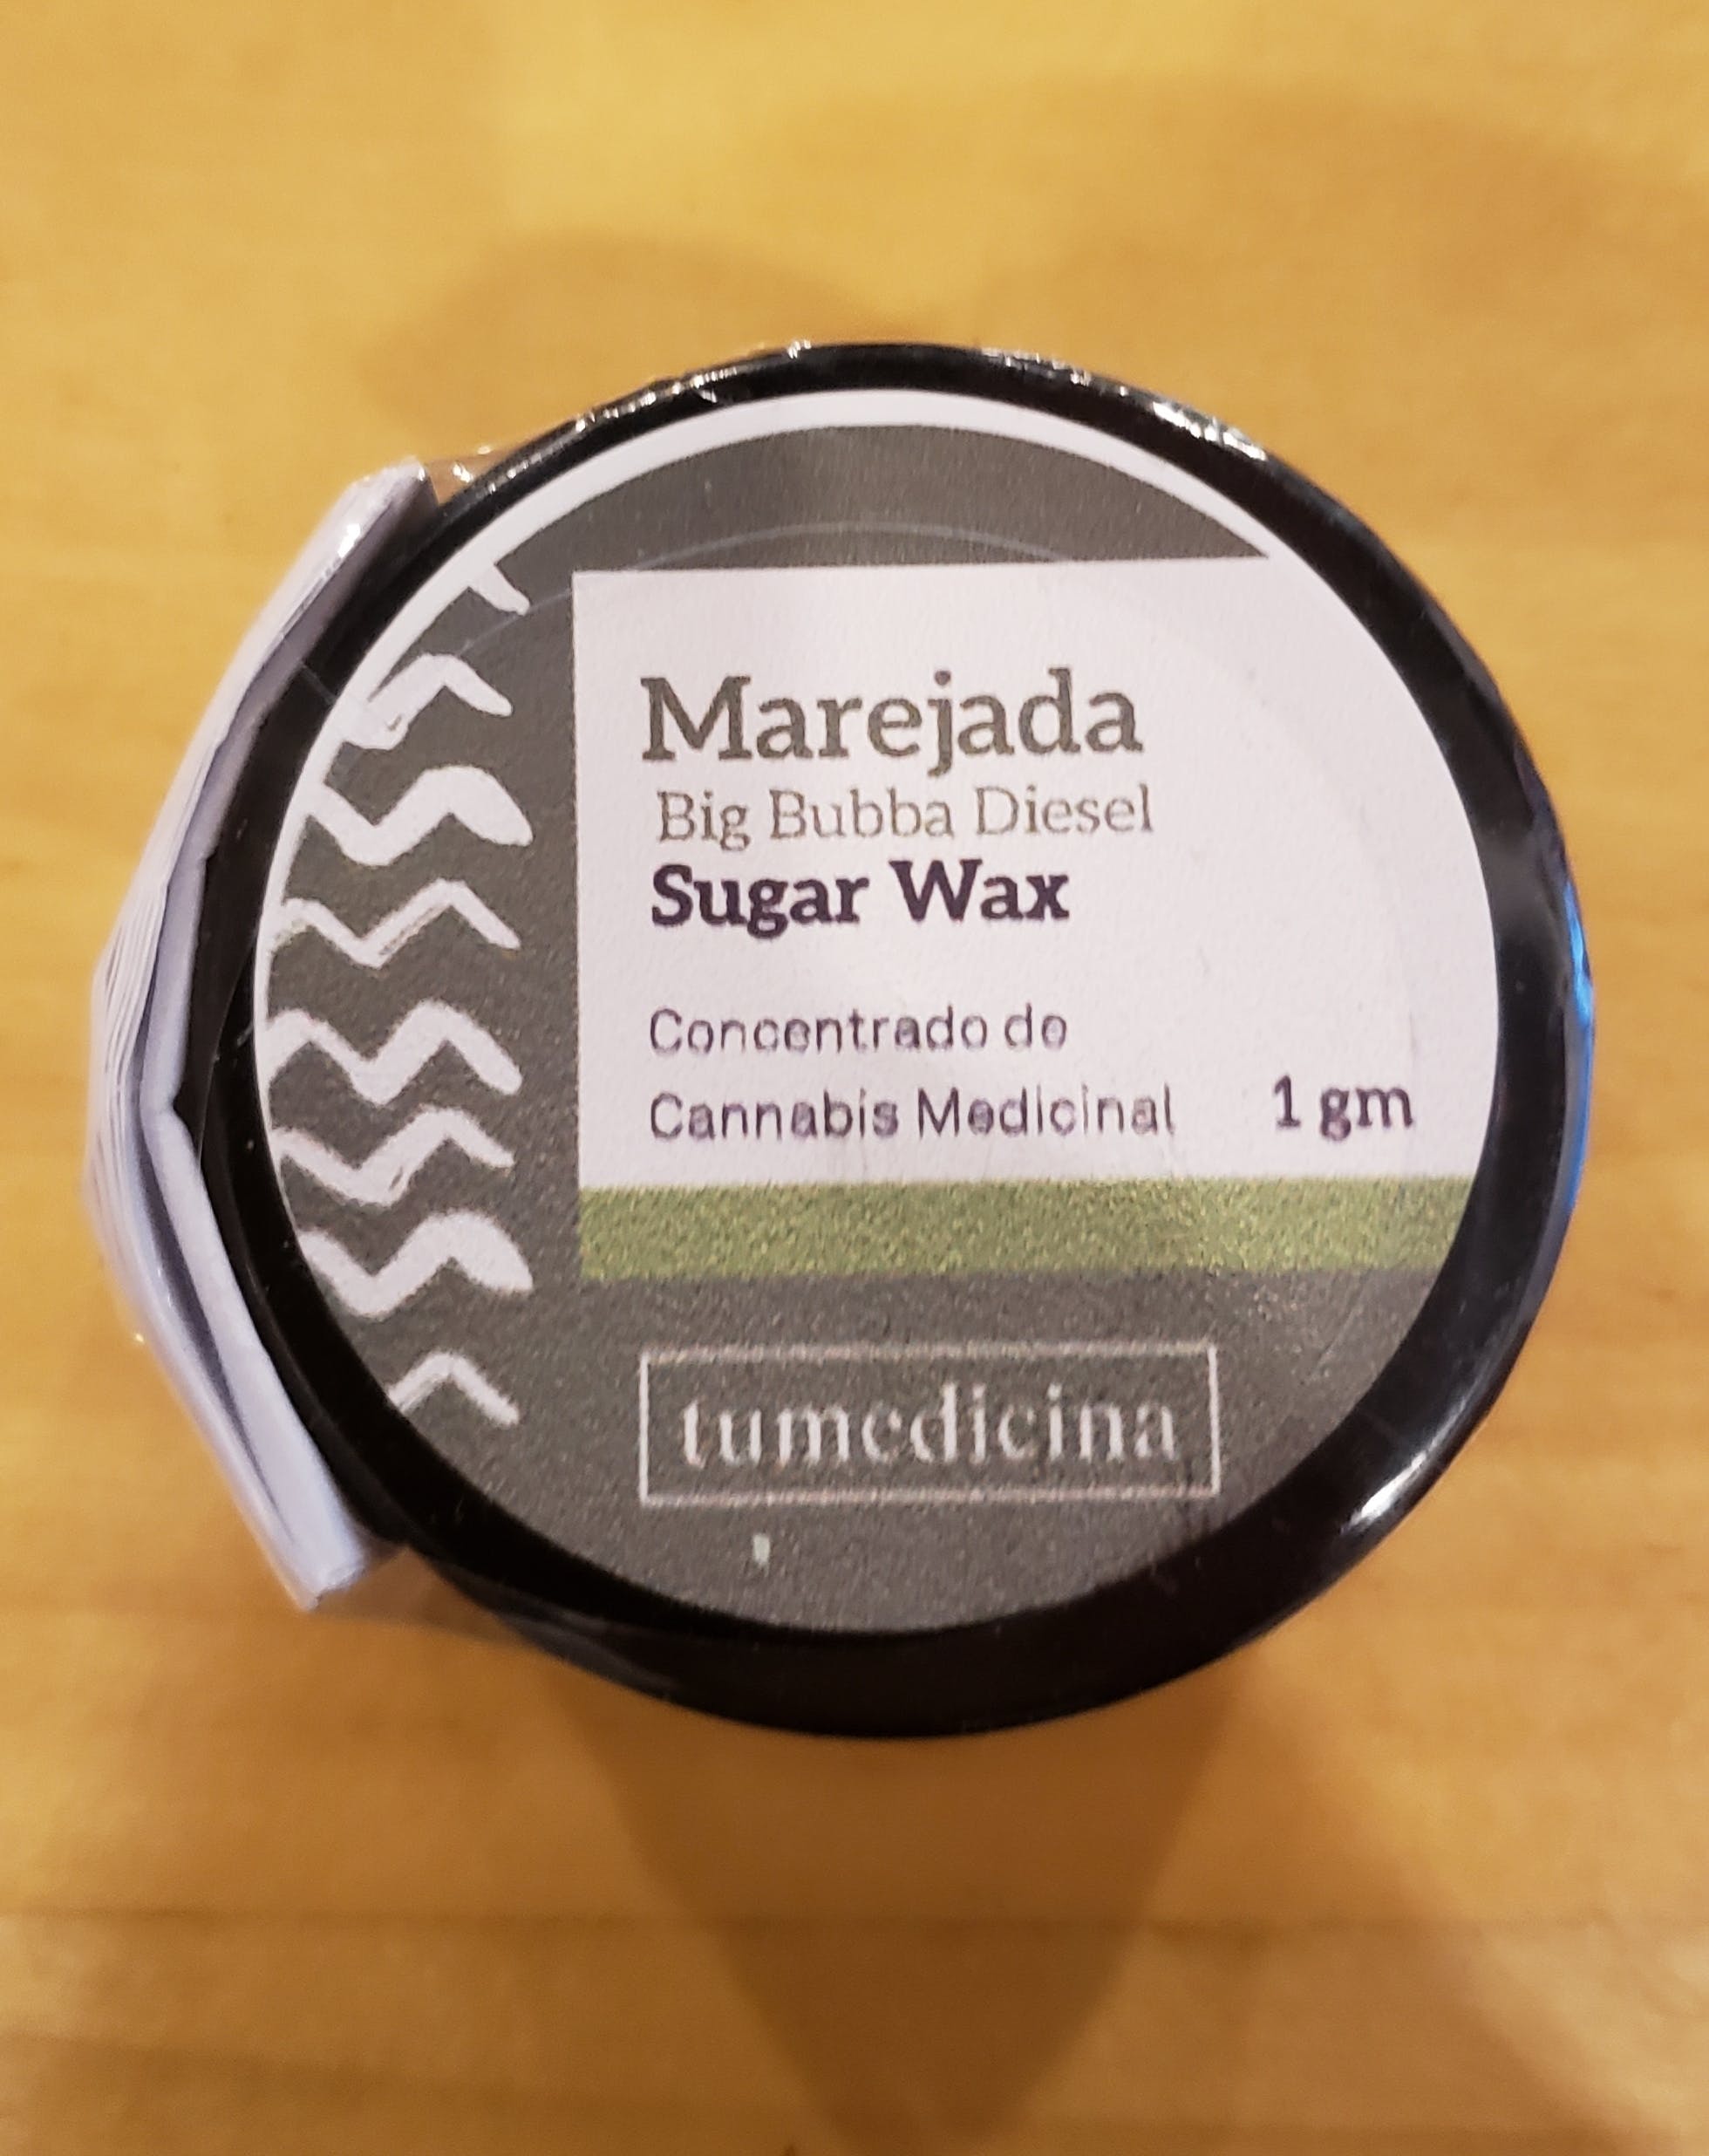 wax-big-bubba-diesel-marejada-sugar-wax